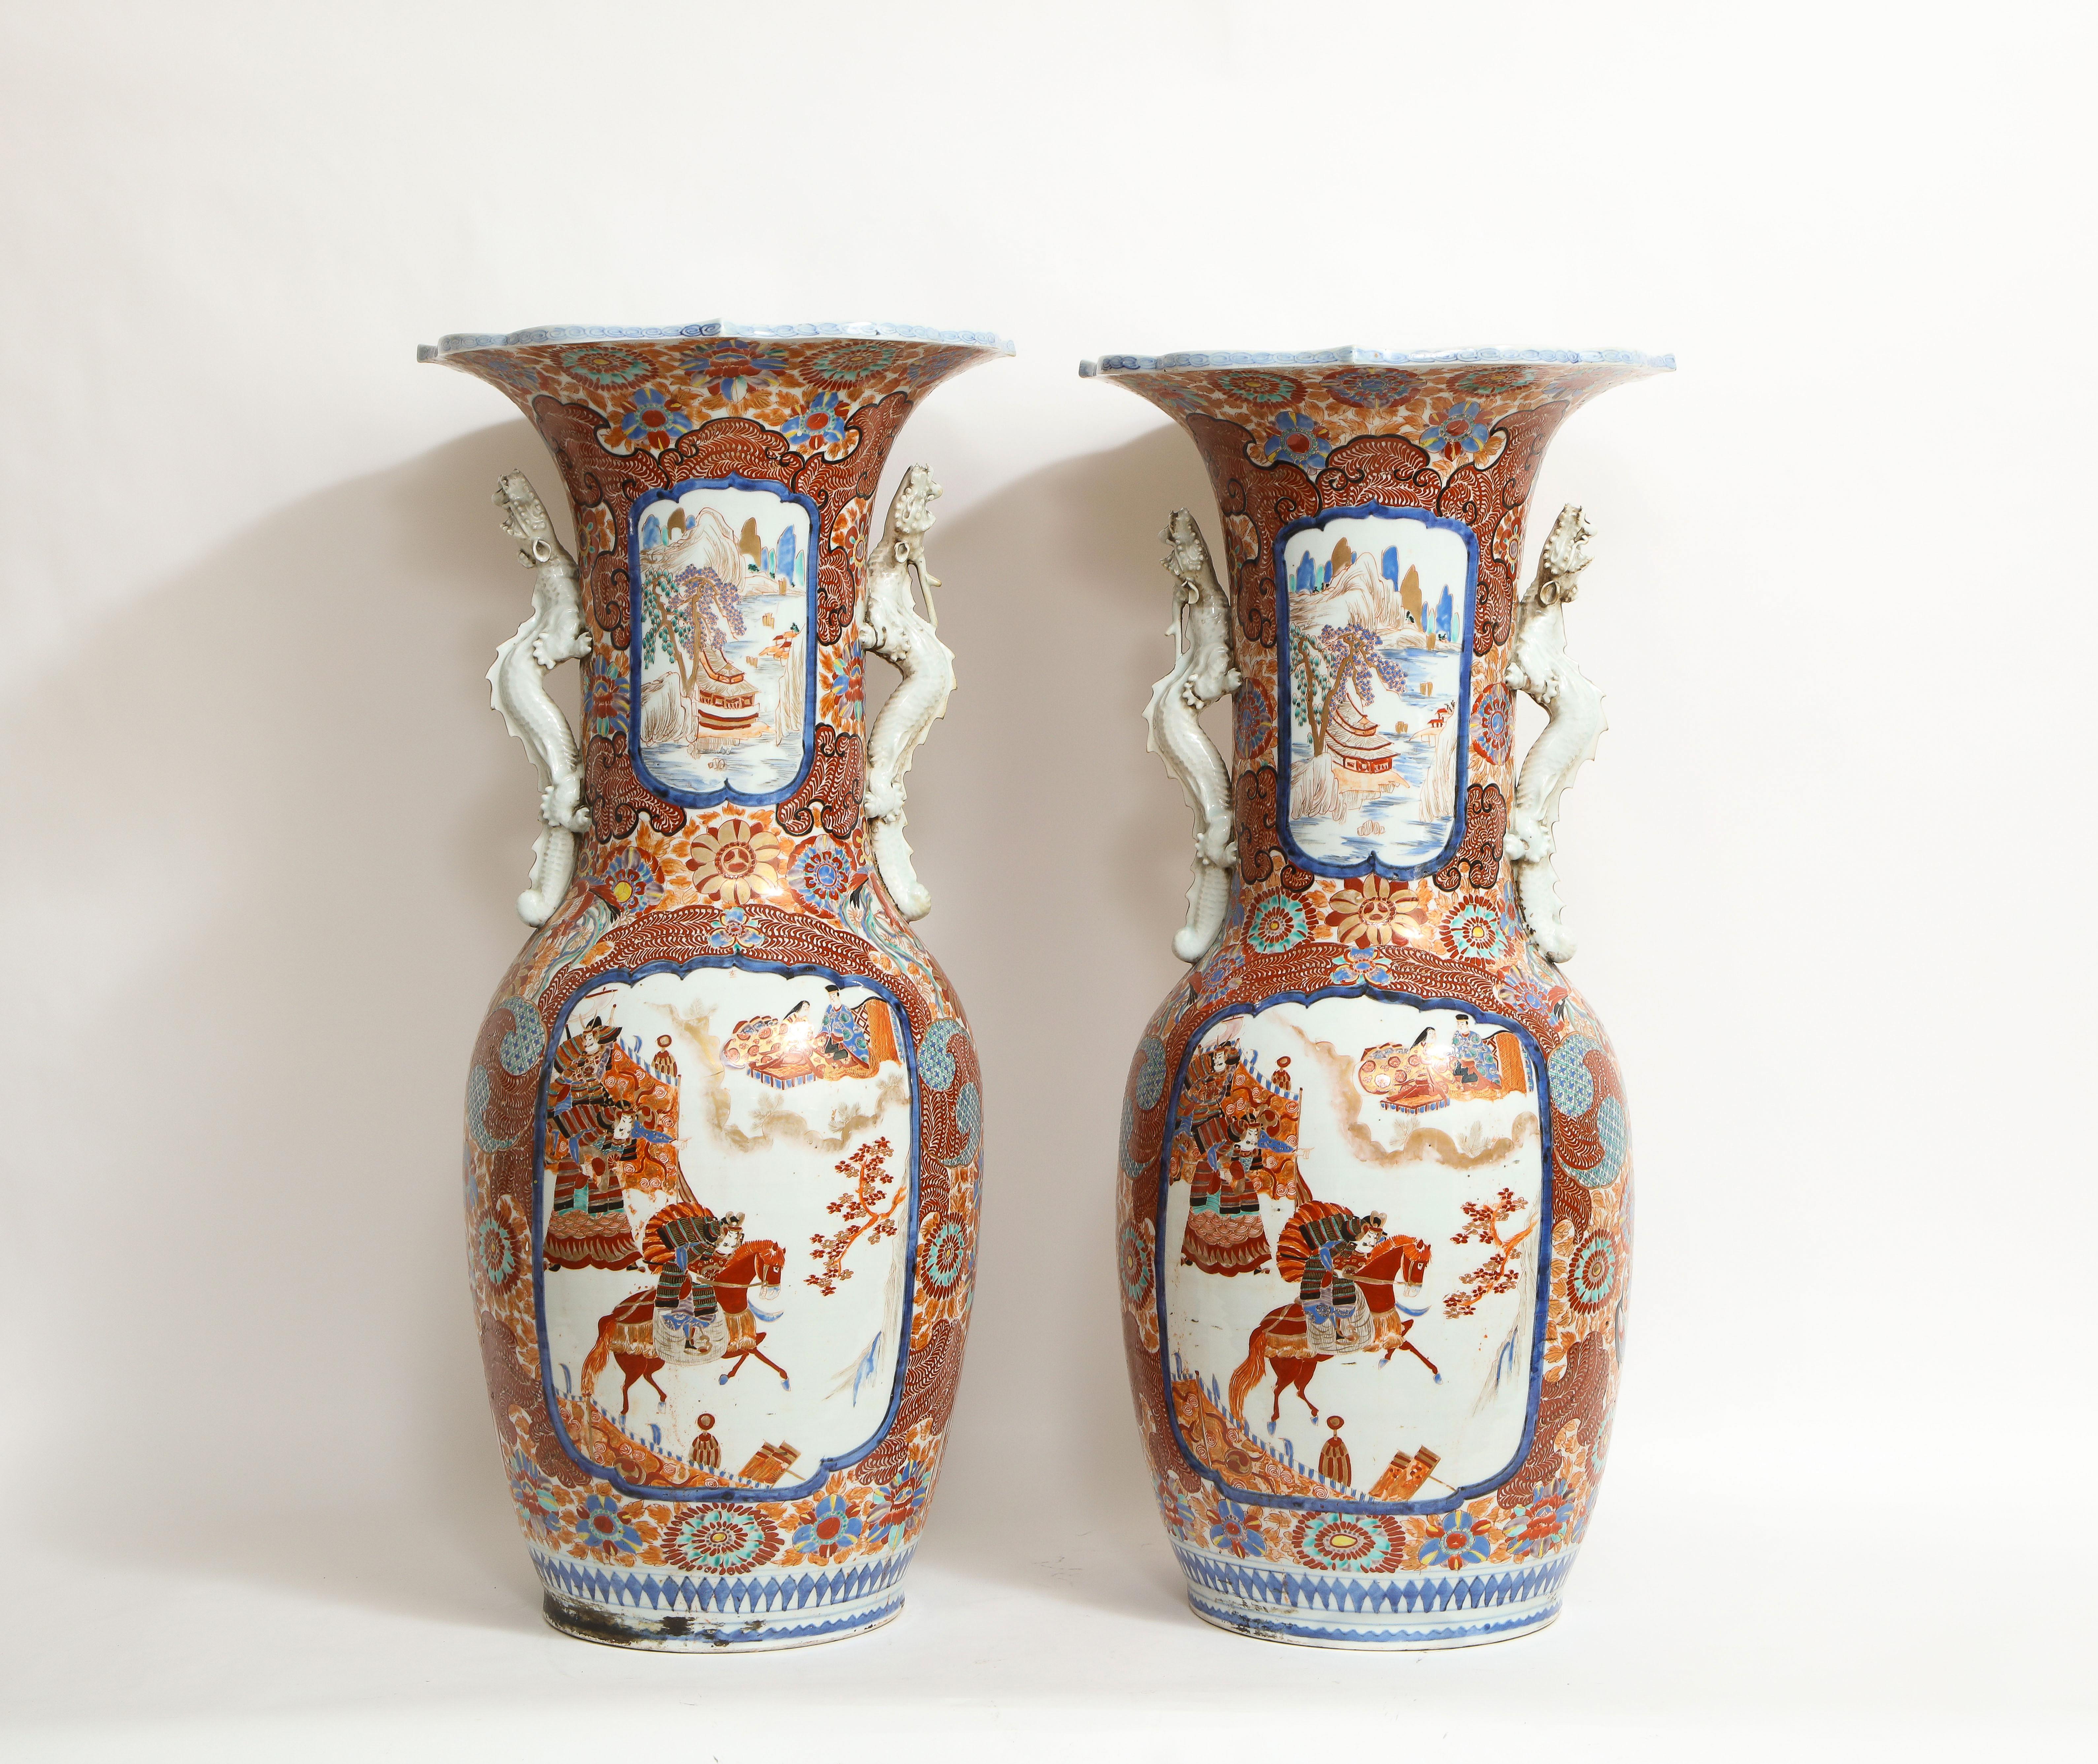 Ein monumentales Paar japanischer Imari-Vasen aus der Meiji-Zeit mit Drachengriffen, japanische Porzellan-Studiomarken auf der Unterseite. Jede ist wunderschön handbemalt und mit fantastischem Imari-Dekor versehen. Die Vasen bestehen aus Paneelen